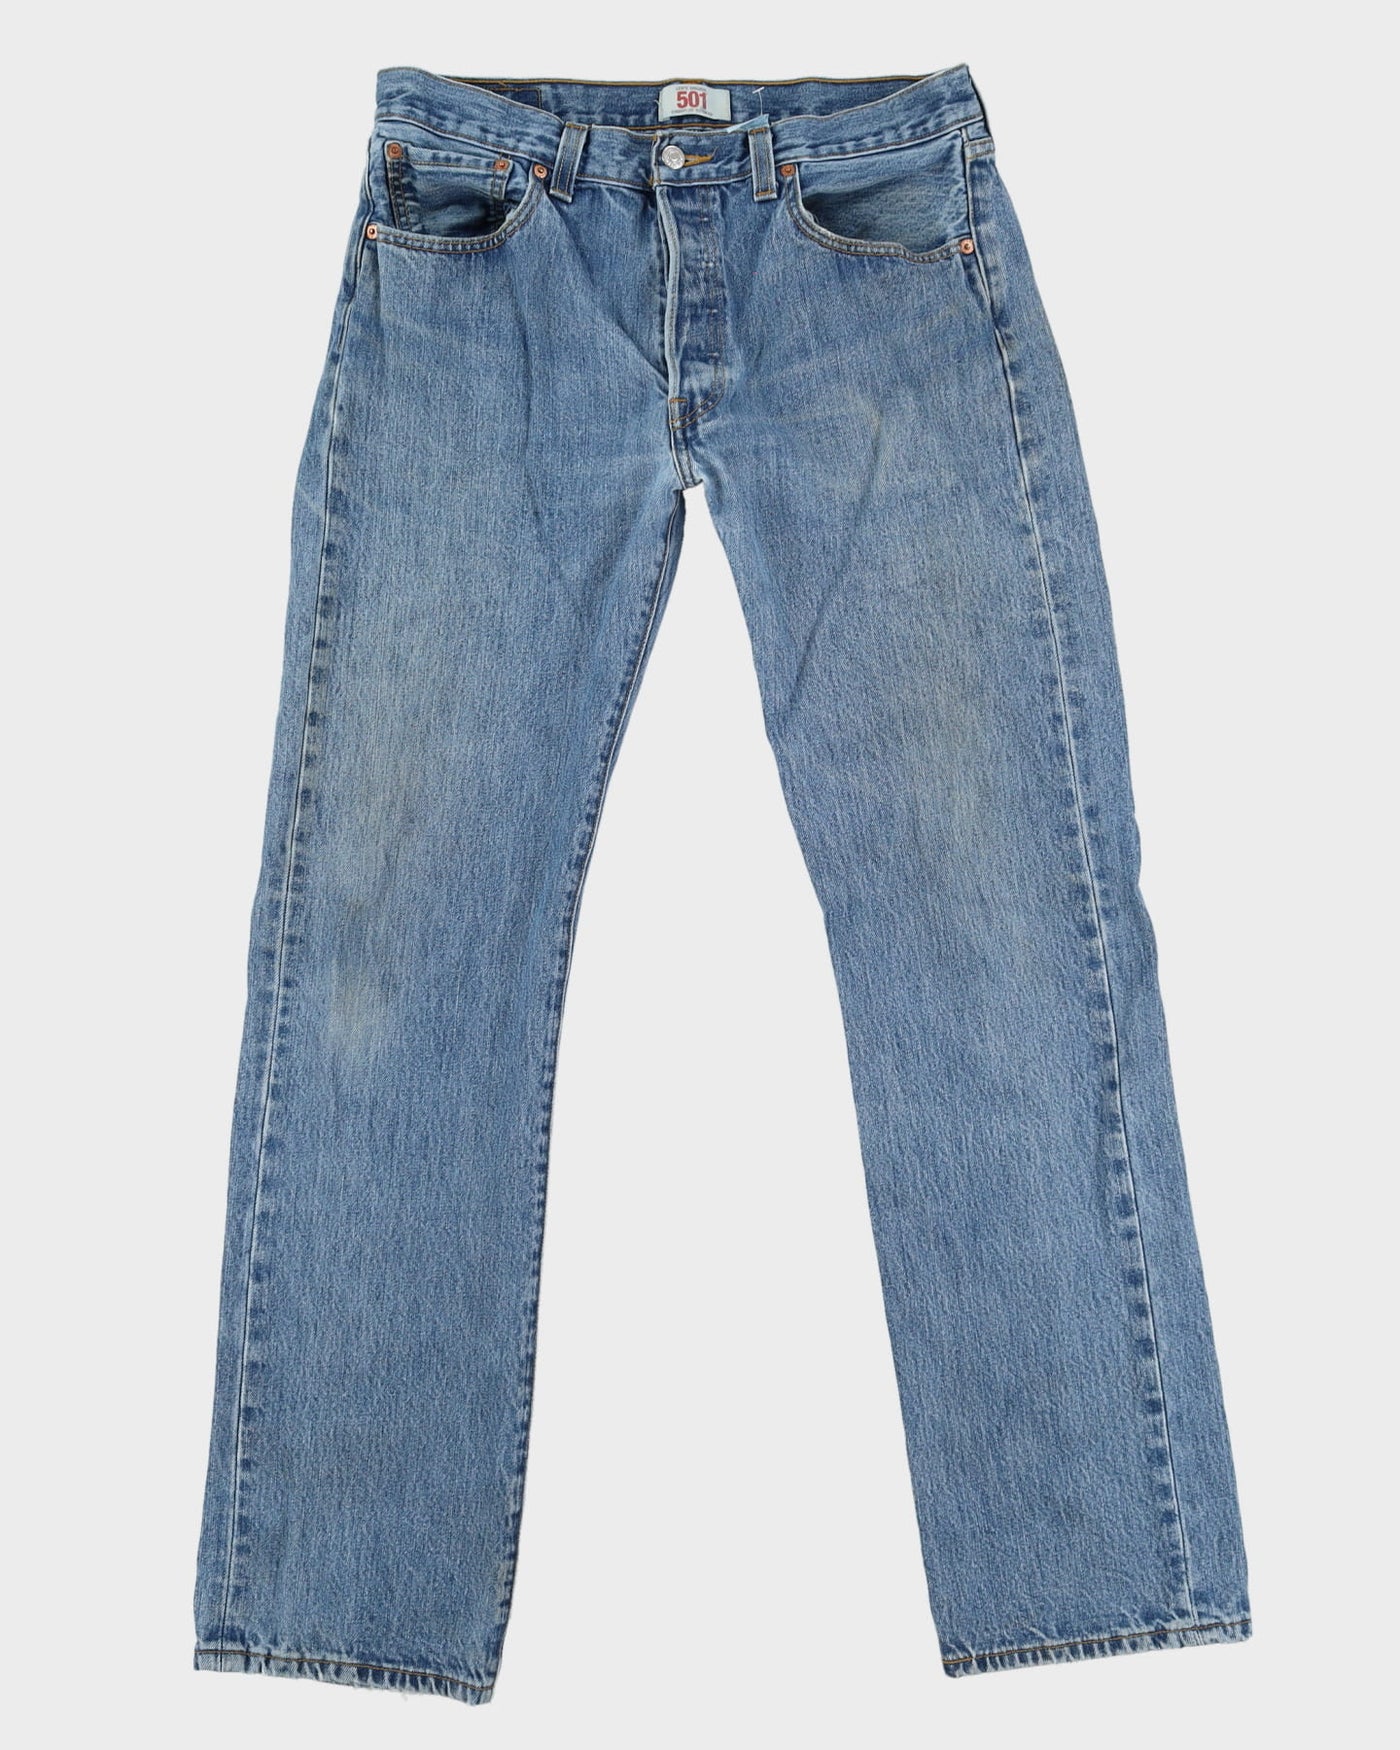 Levi's 501 Blue Light Wash Jeans - W34 L34